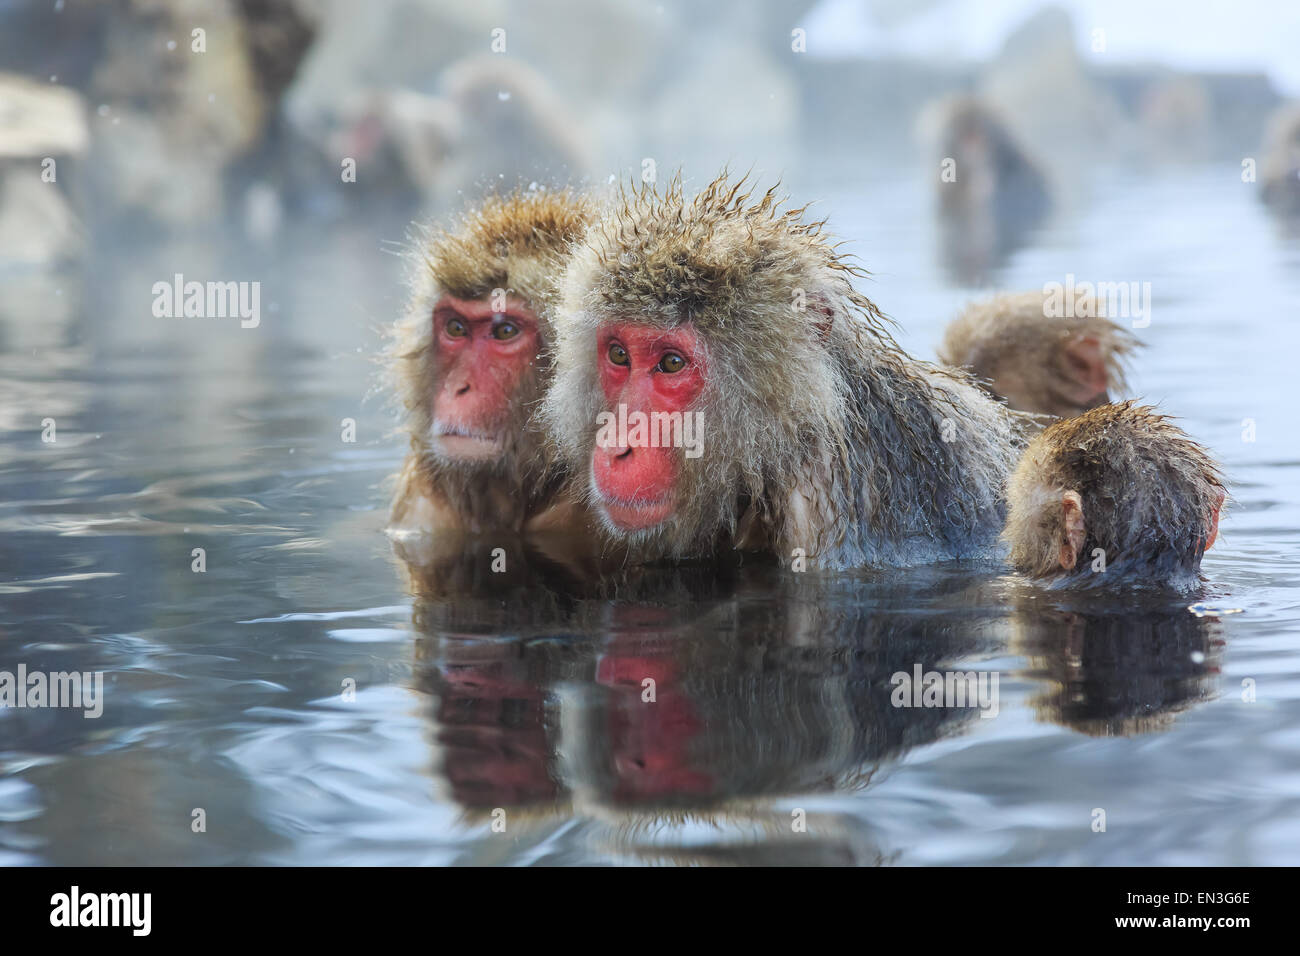 Neve le scimmie in una naturale onsen (primavera calda), situato nel Parco di Jigokudani, Yudanaka. Nagano in Giappone. Foto Stock